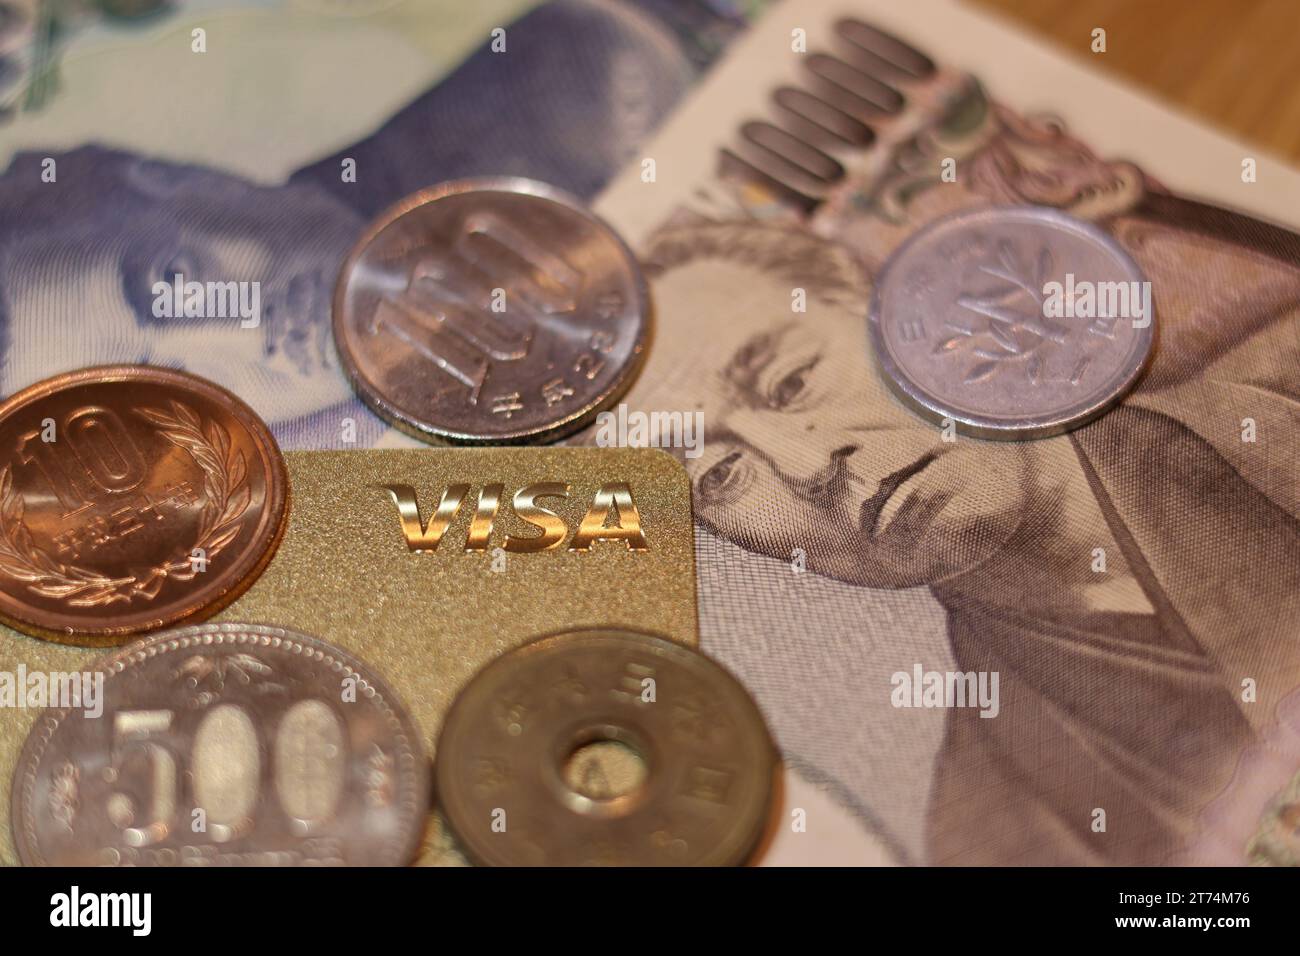 Eine Auswahl von Währungen, bestehend aus Münzen, zwei-Pence-Stücken, einer Banknote und anderen Formen von Papiergeld, die auf einem Stapel auf weißem Hintergrund angeordnet sind Stockfoto